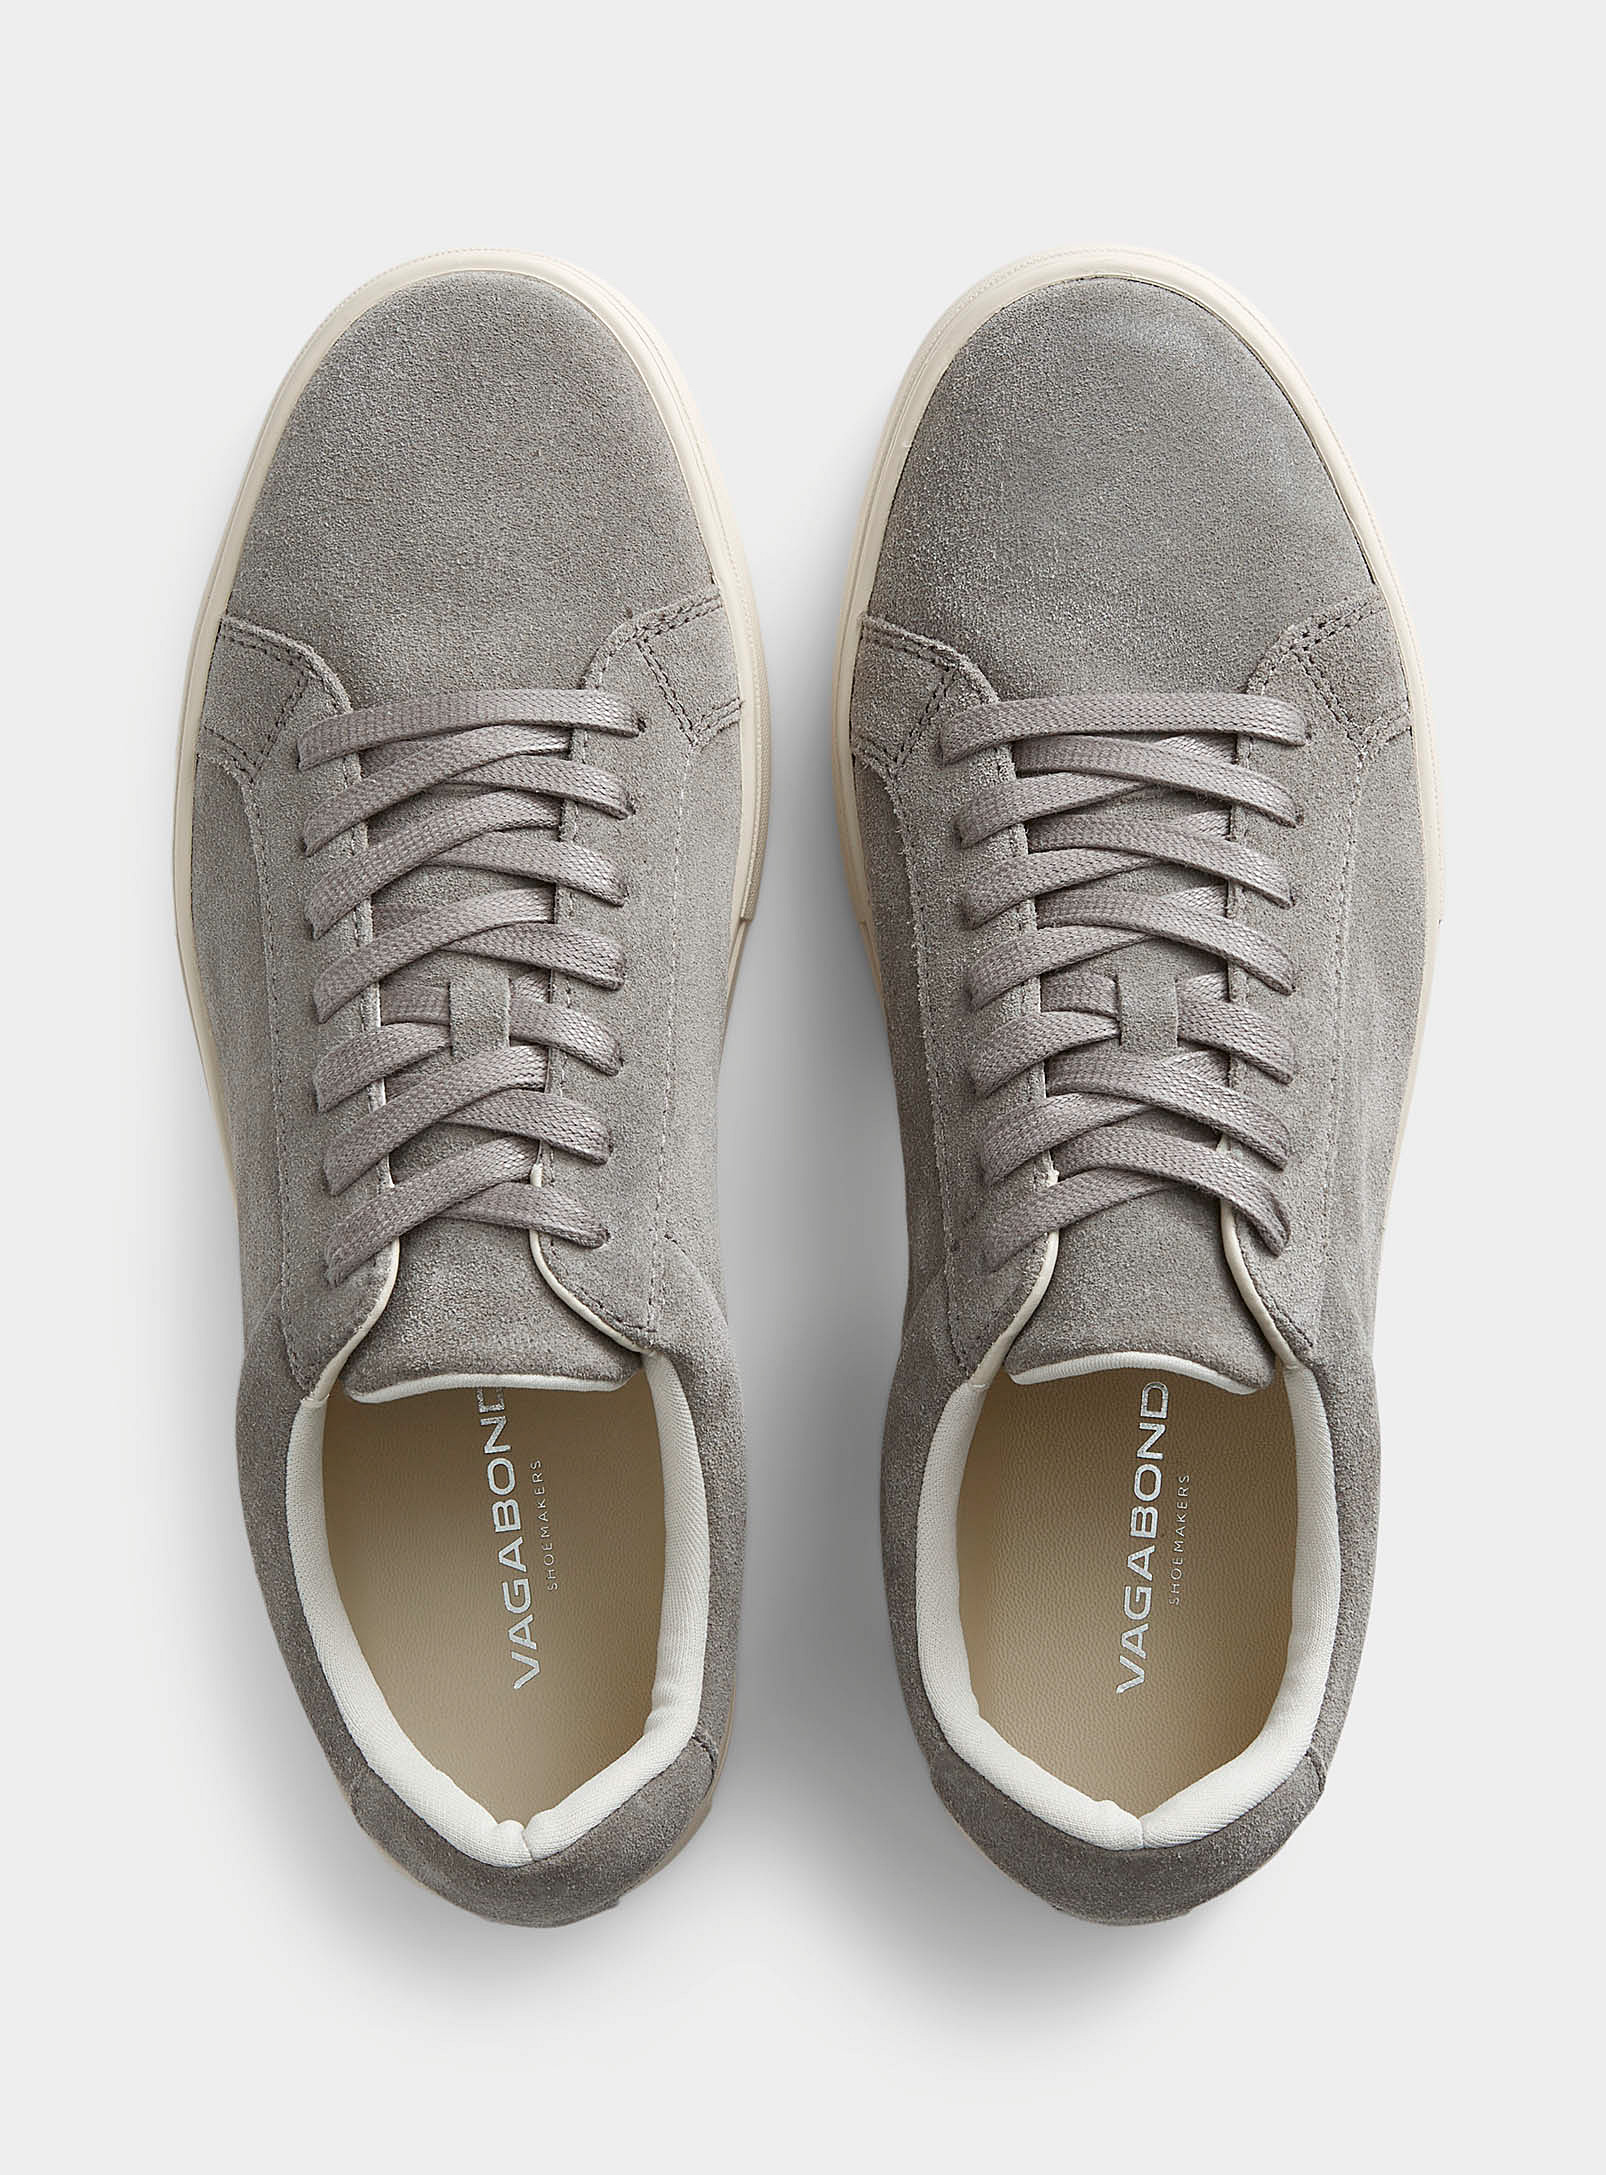 Vagabond Shoemakers - Chaussures Le Sneaker en suède Paul 2.0 Homme